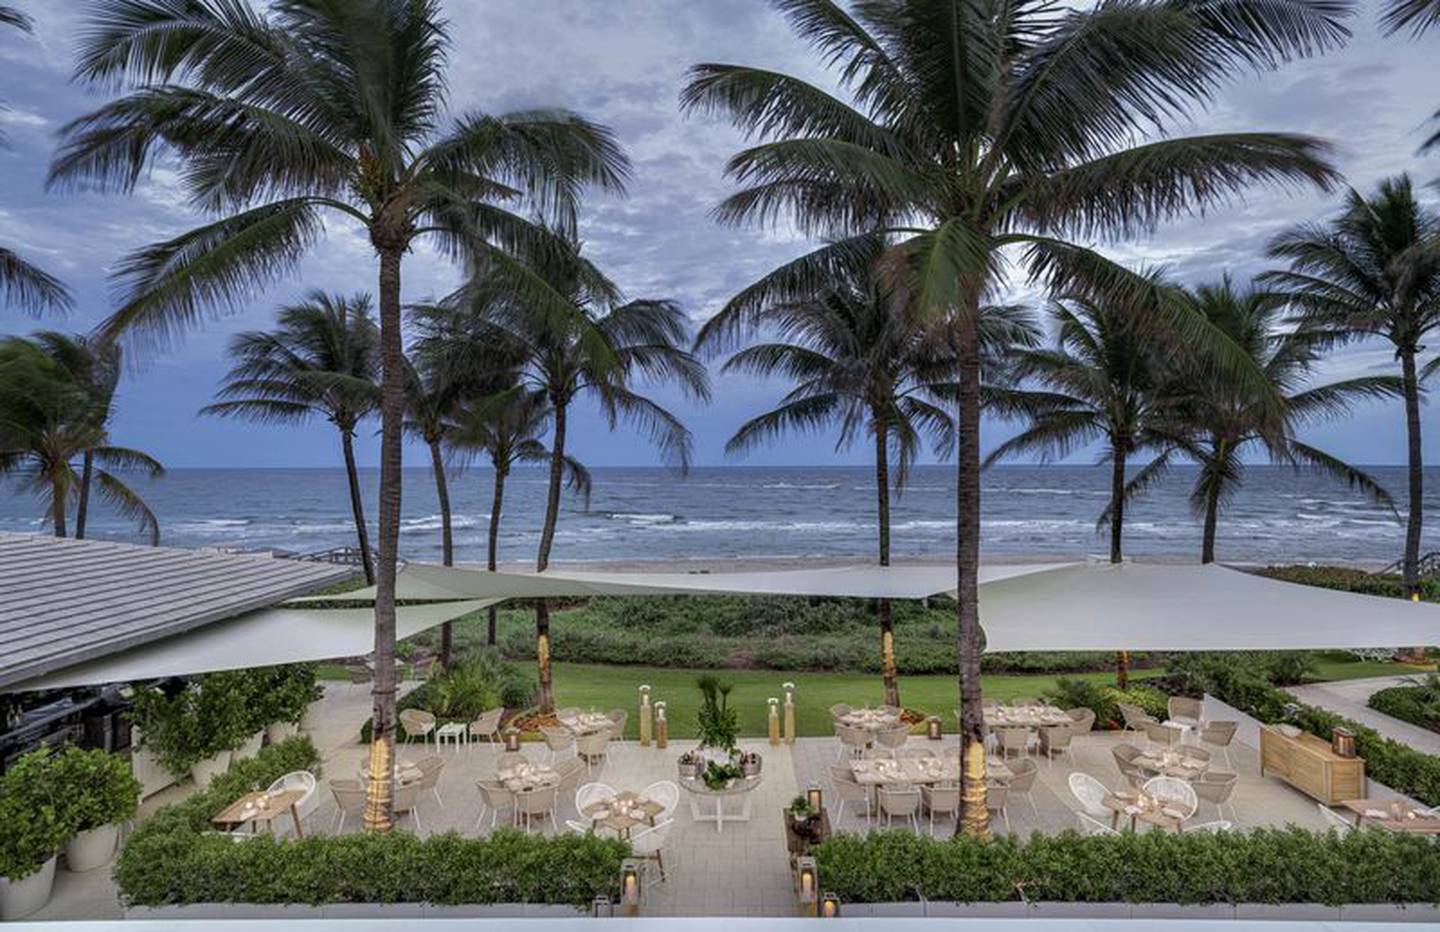 Frente al océano desde Marisol, un restaurante griego en el Beach Club. Todos los restaurantes de The Boca Raton son exclusivos para los huéspedes y socios del hotel.Fotógrafo: Thomas Hart Shelby
dfd